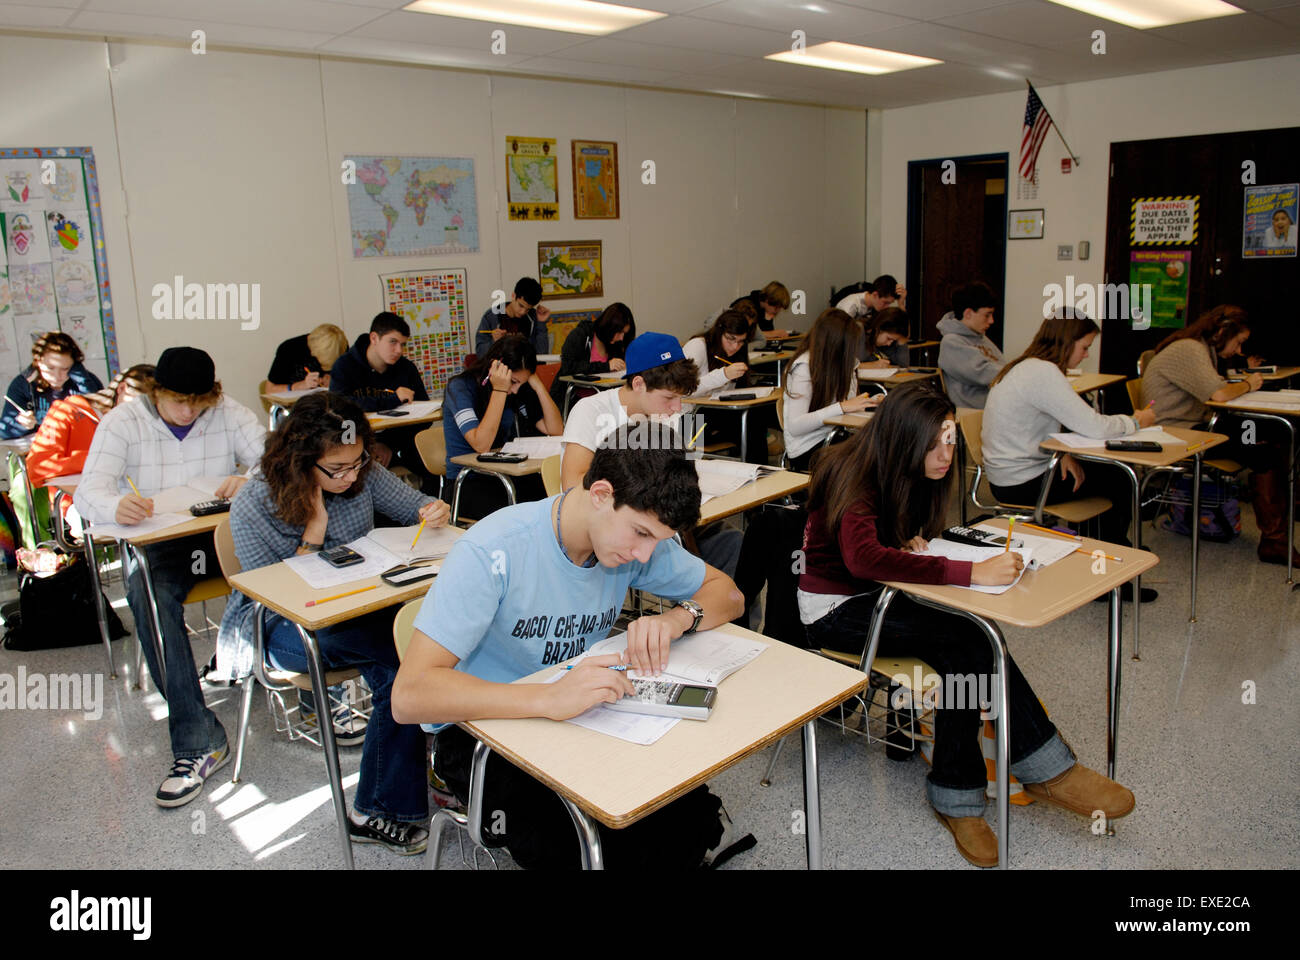 Les élèves de classe de l'école secondaire de prendre un test de mathématiques normalisés Banque D'Images